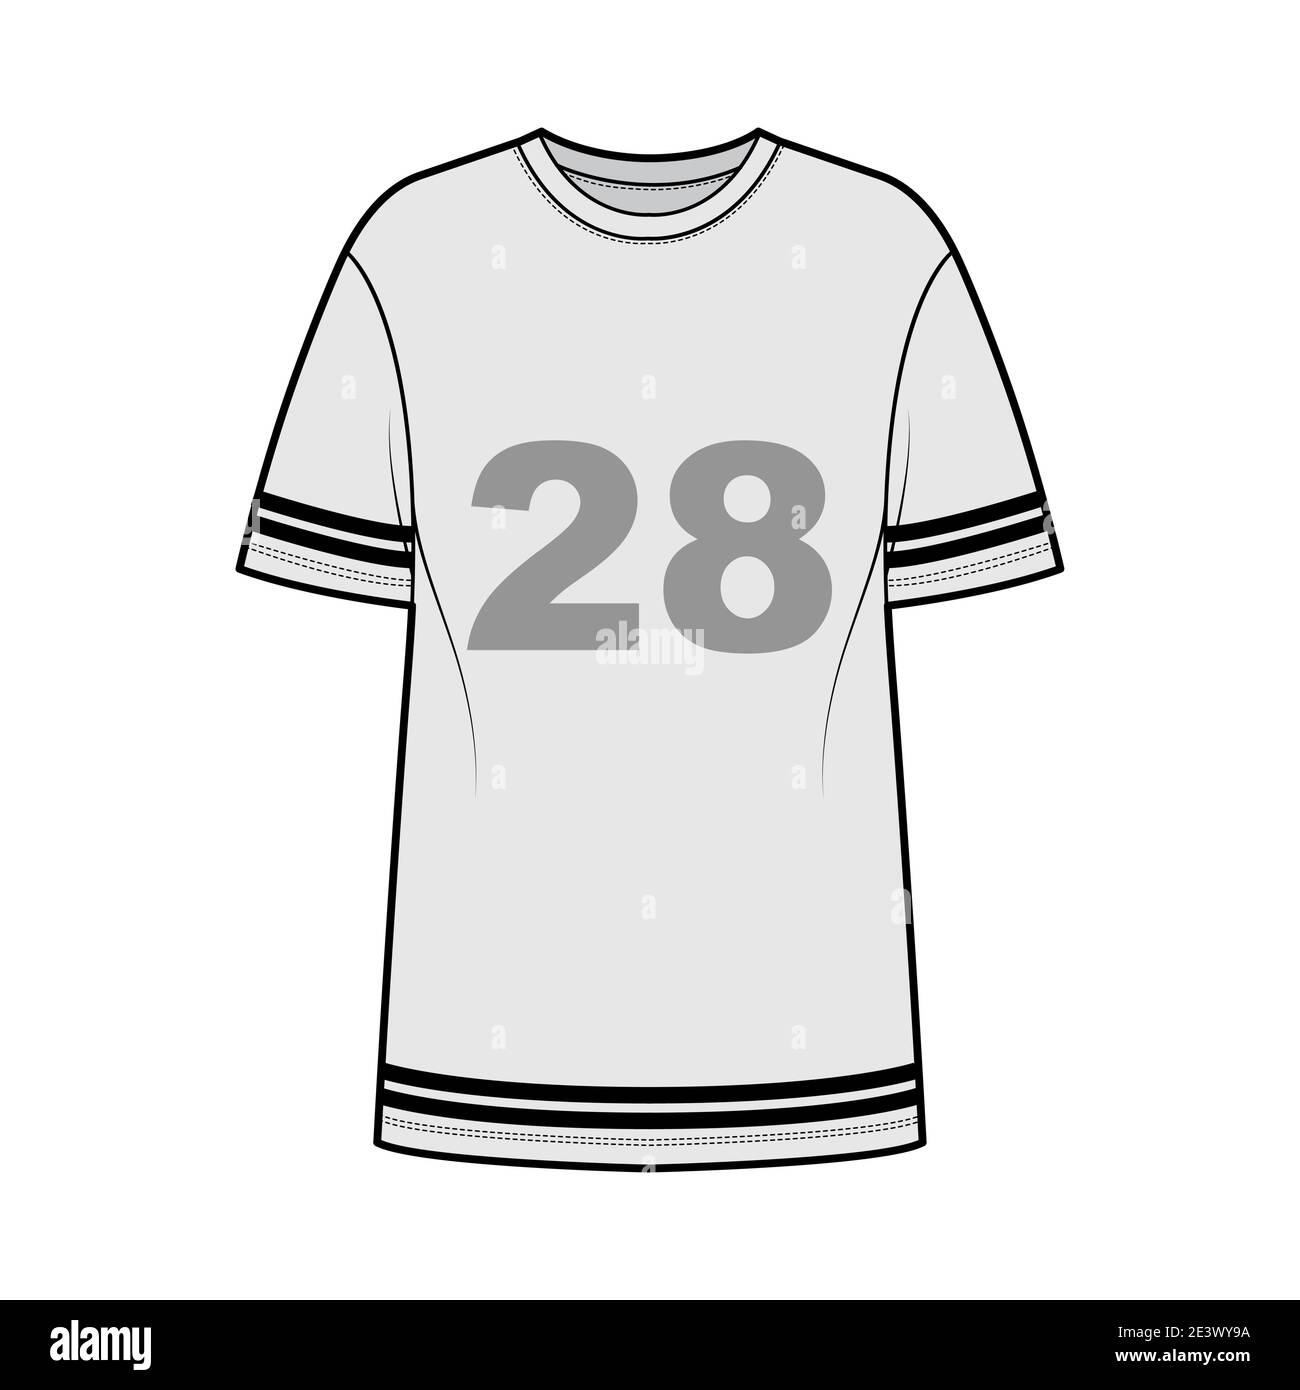 Camiseta fútbol americano técnica ilustración de moda con manga